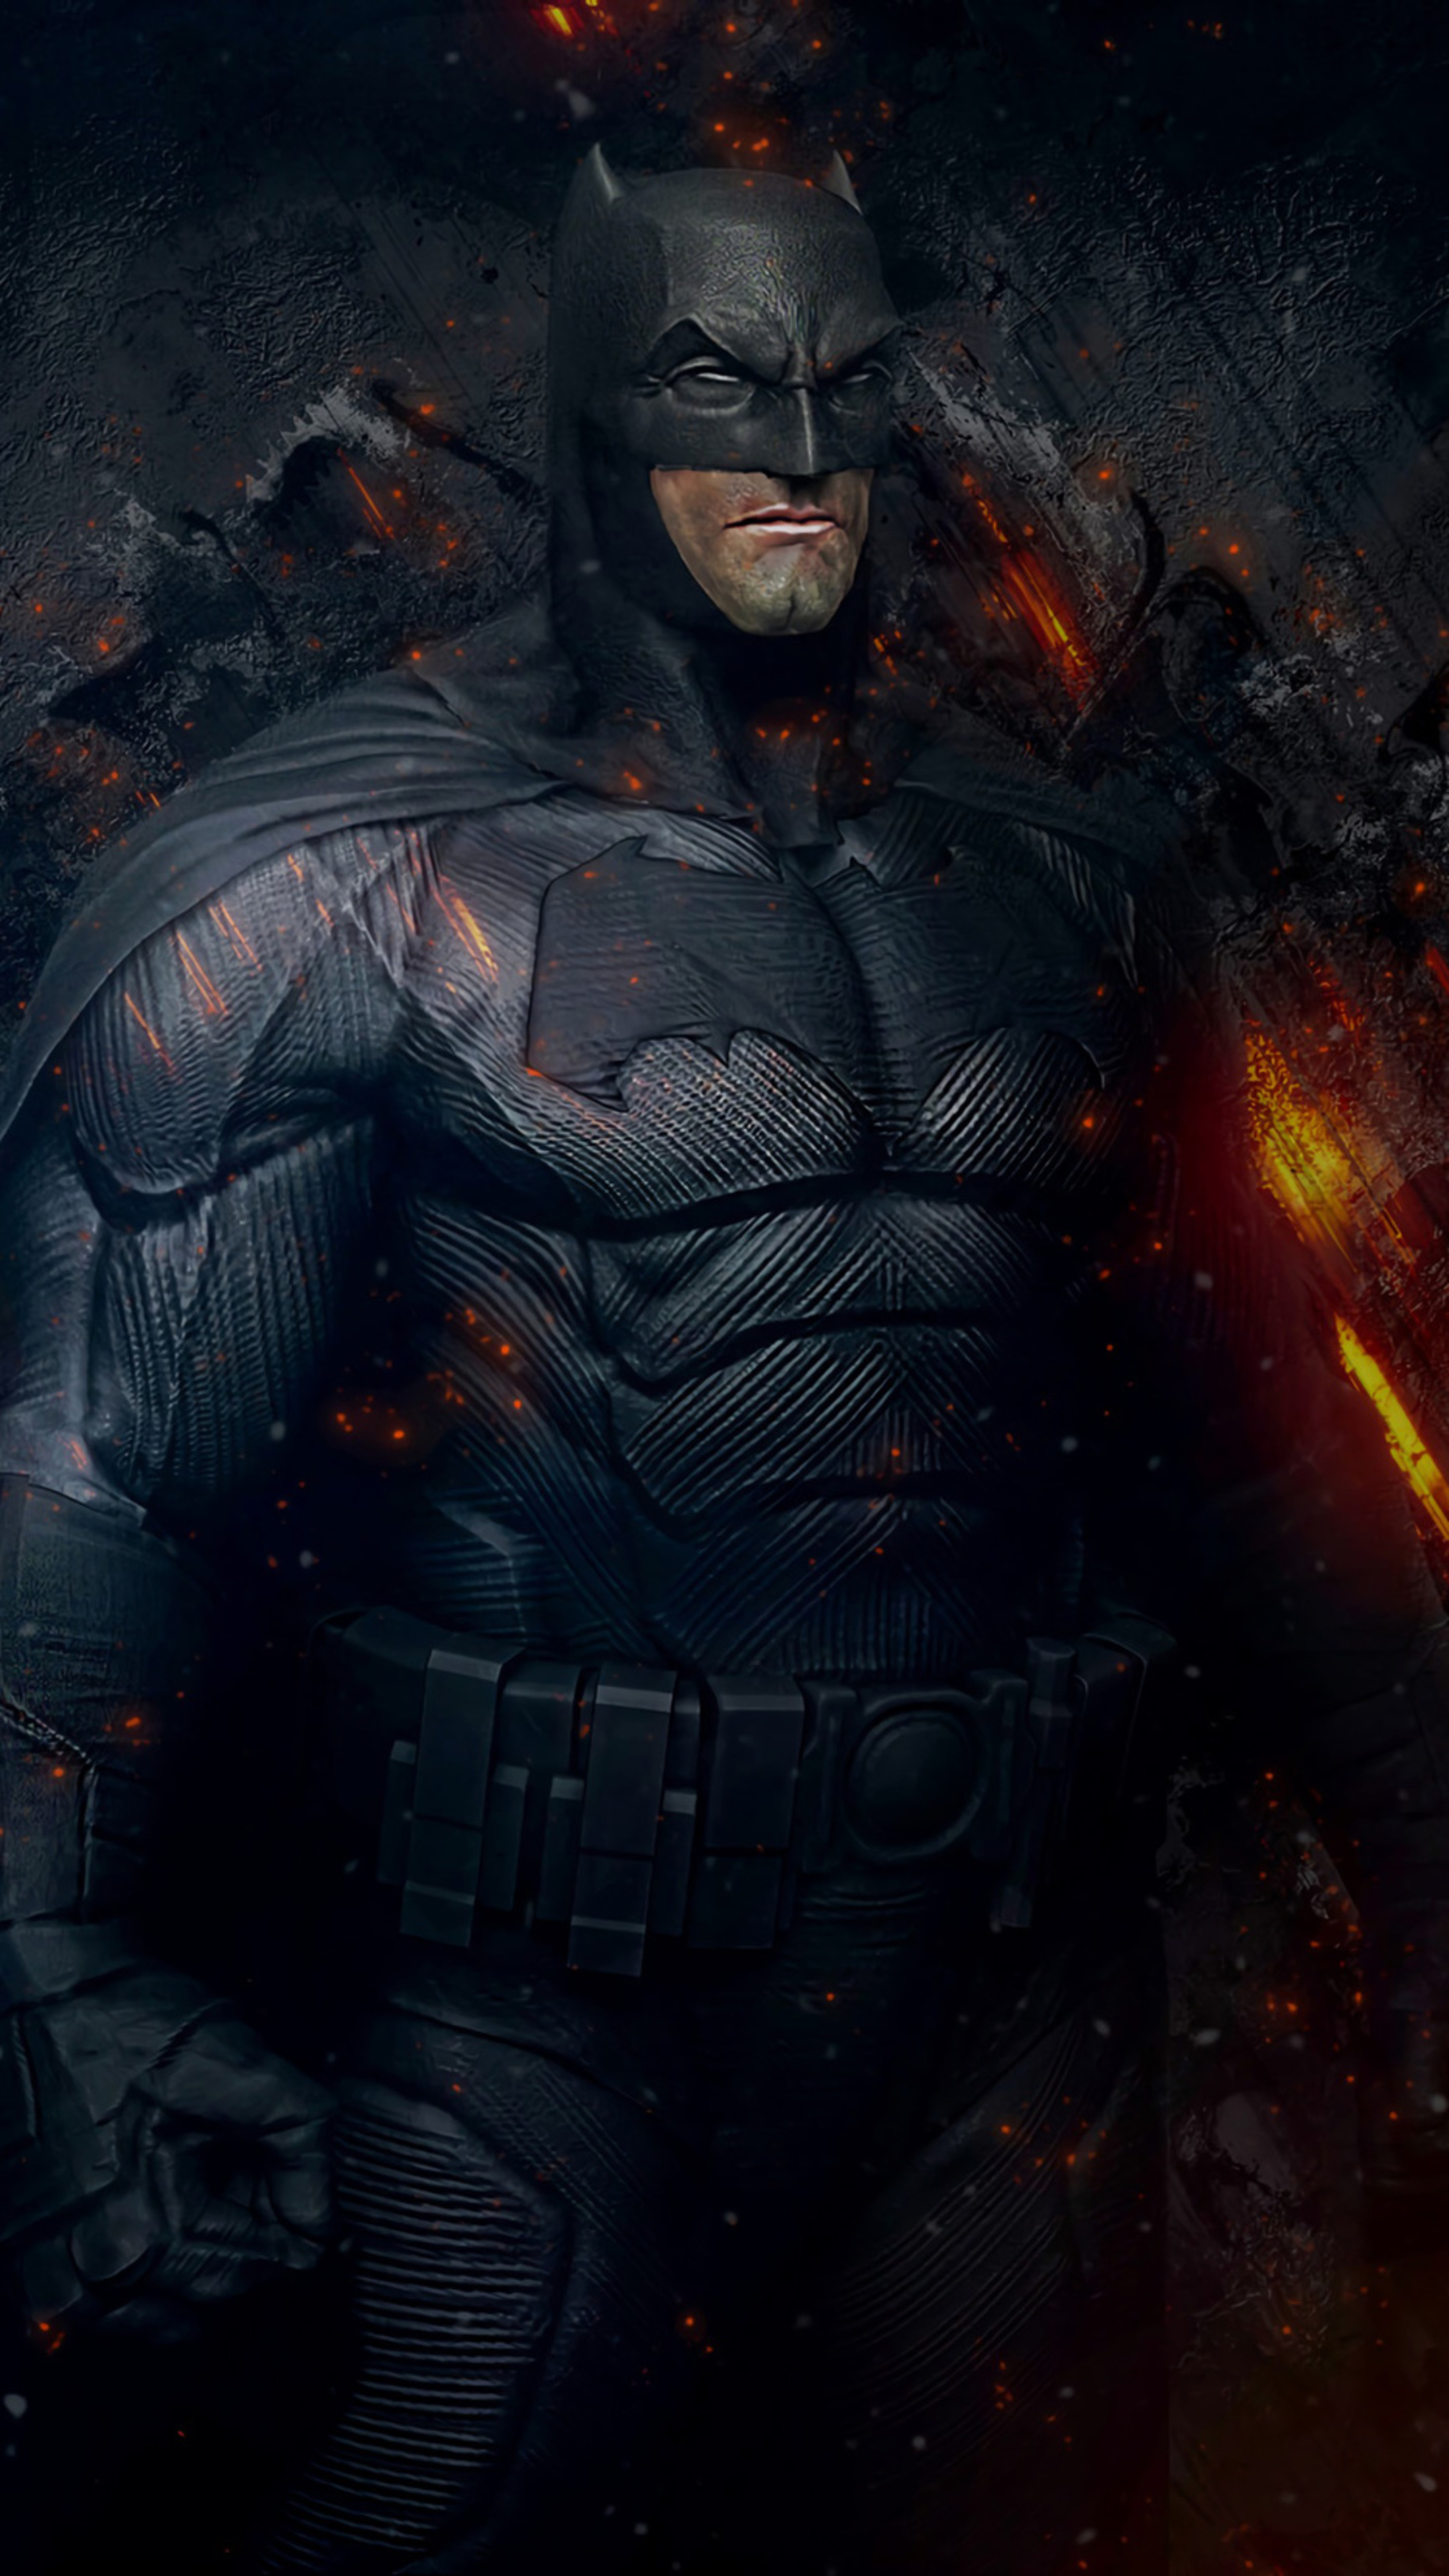 Nexus batman. Бэтмен высокое качество. Брутальный Бэтмен. Крутые обои Бэтмен. Ай эм Бэтмен.